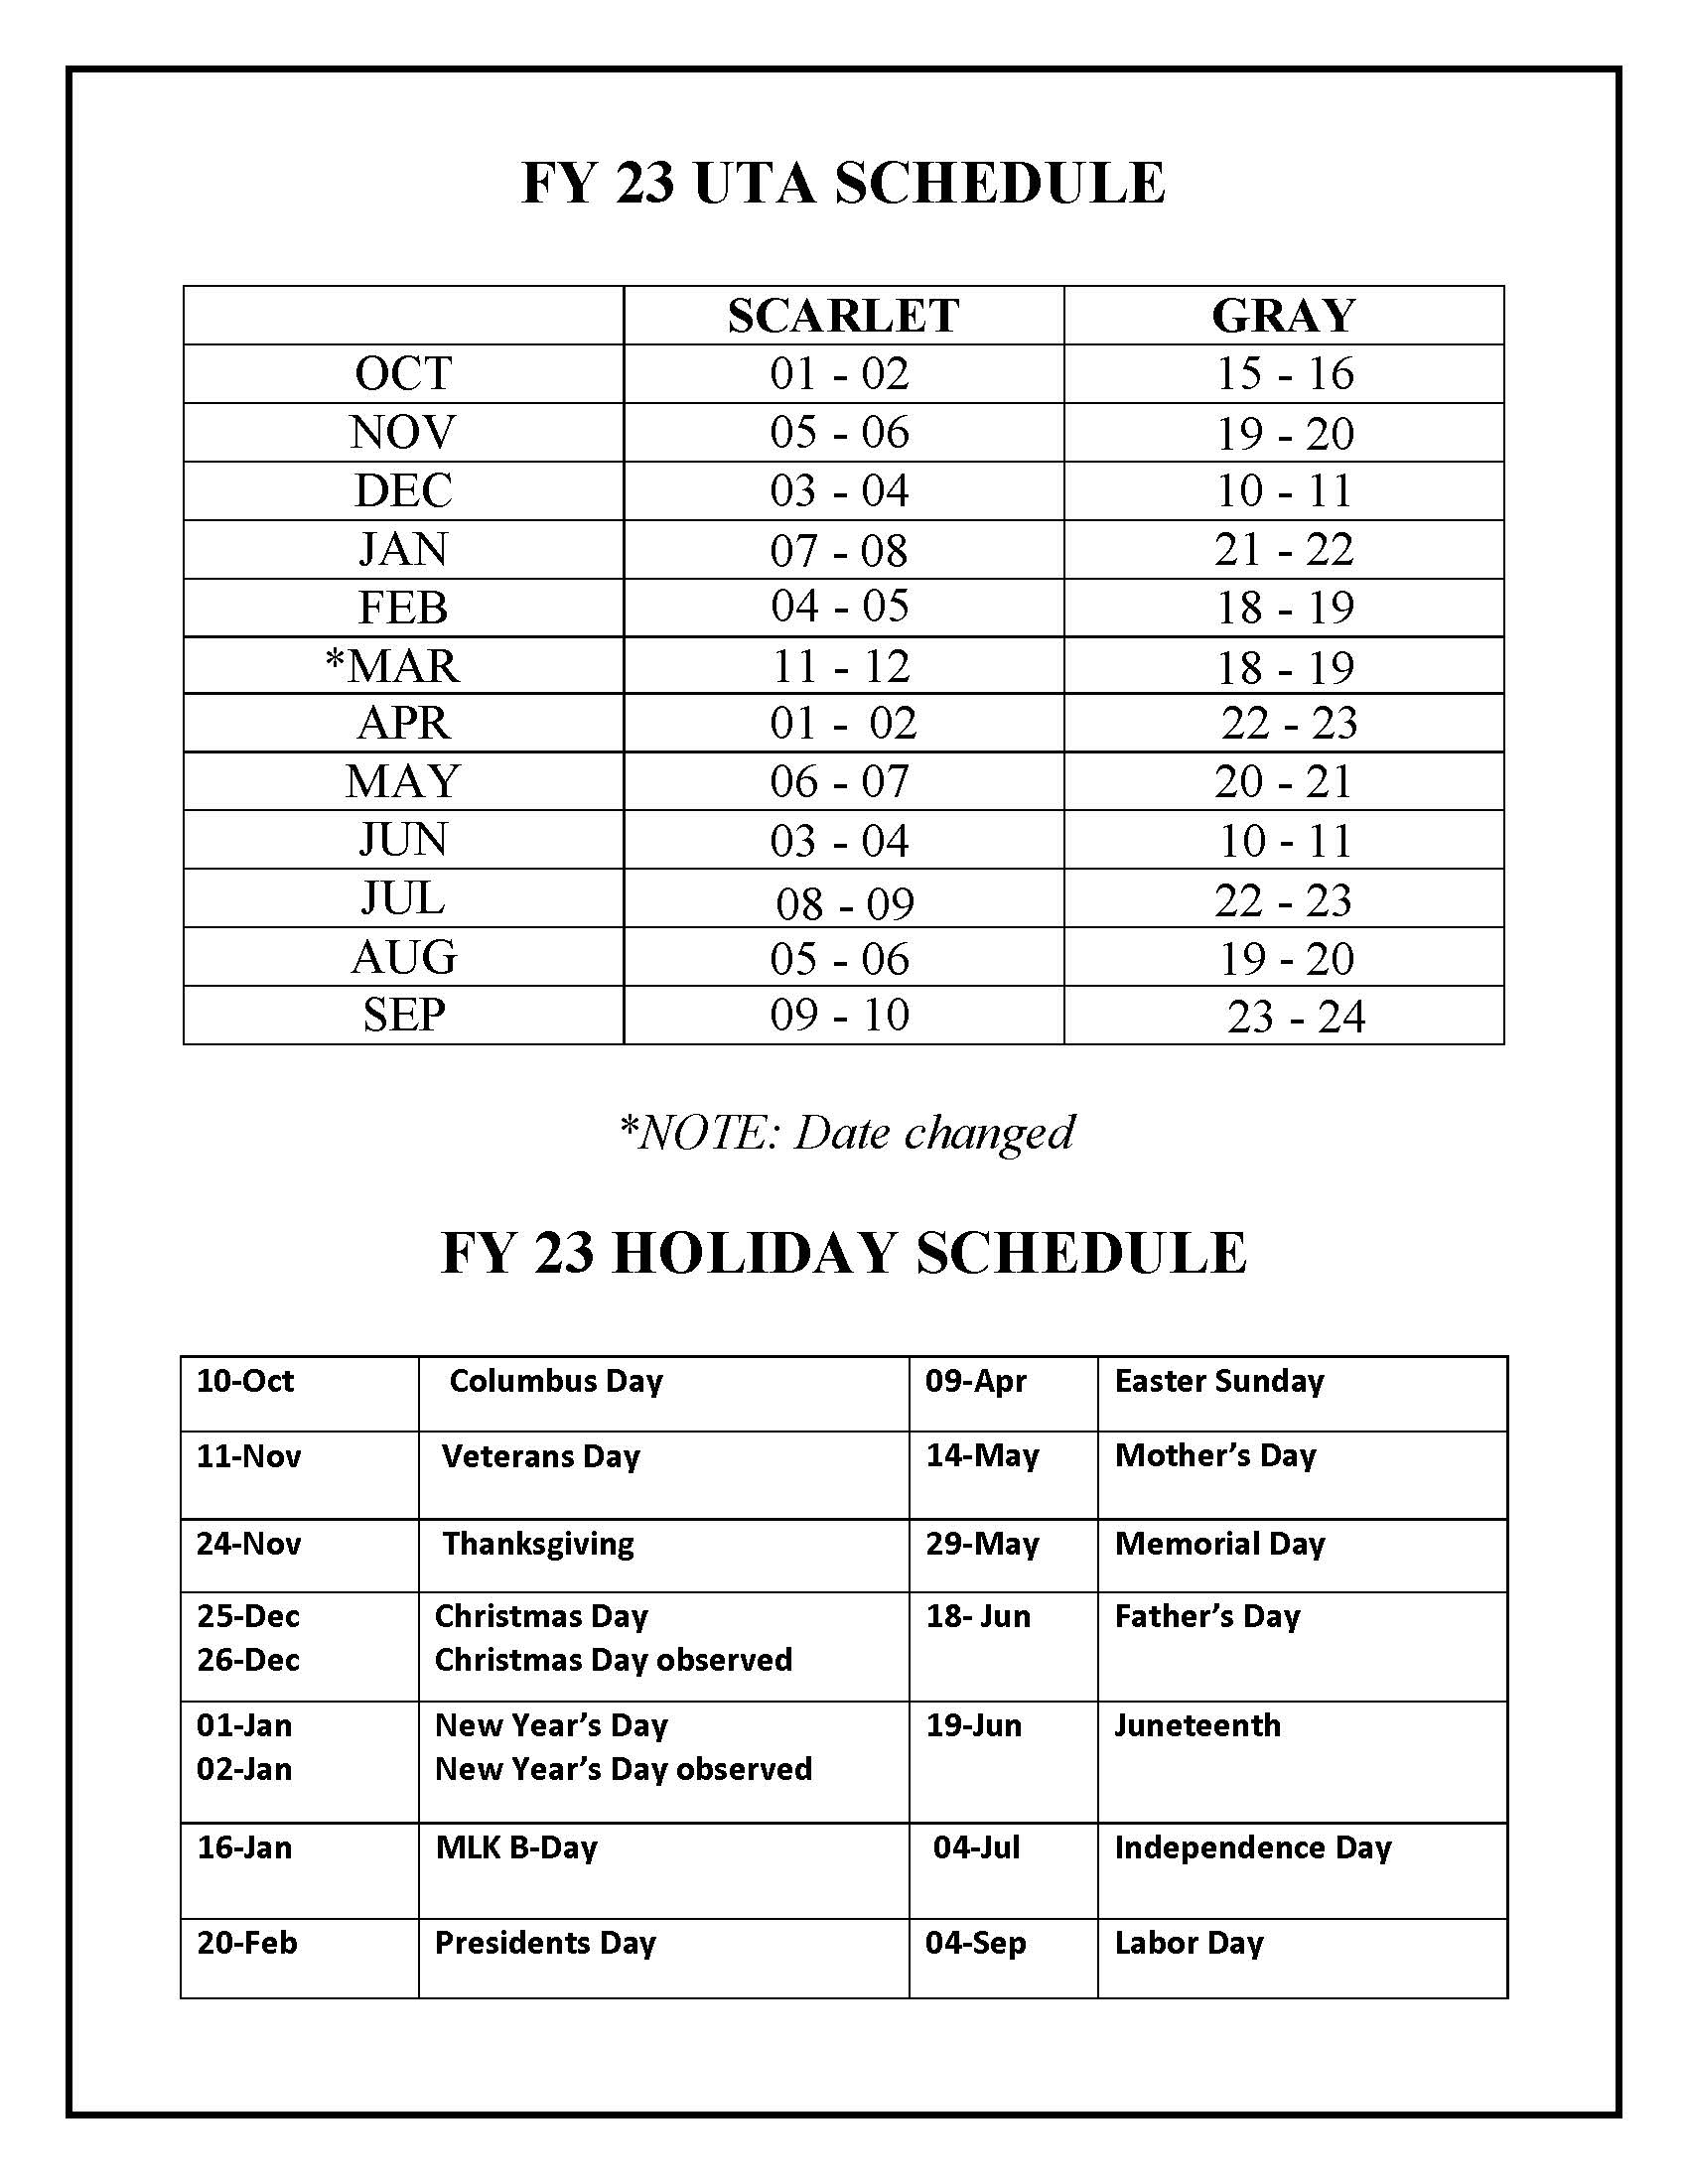 FY 23 UTA schedule